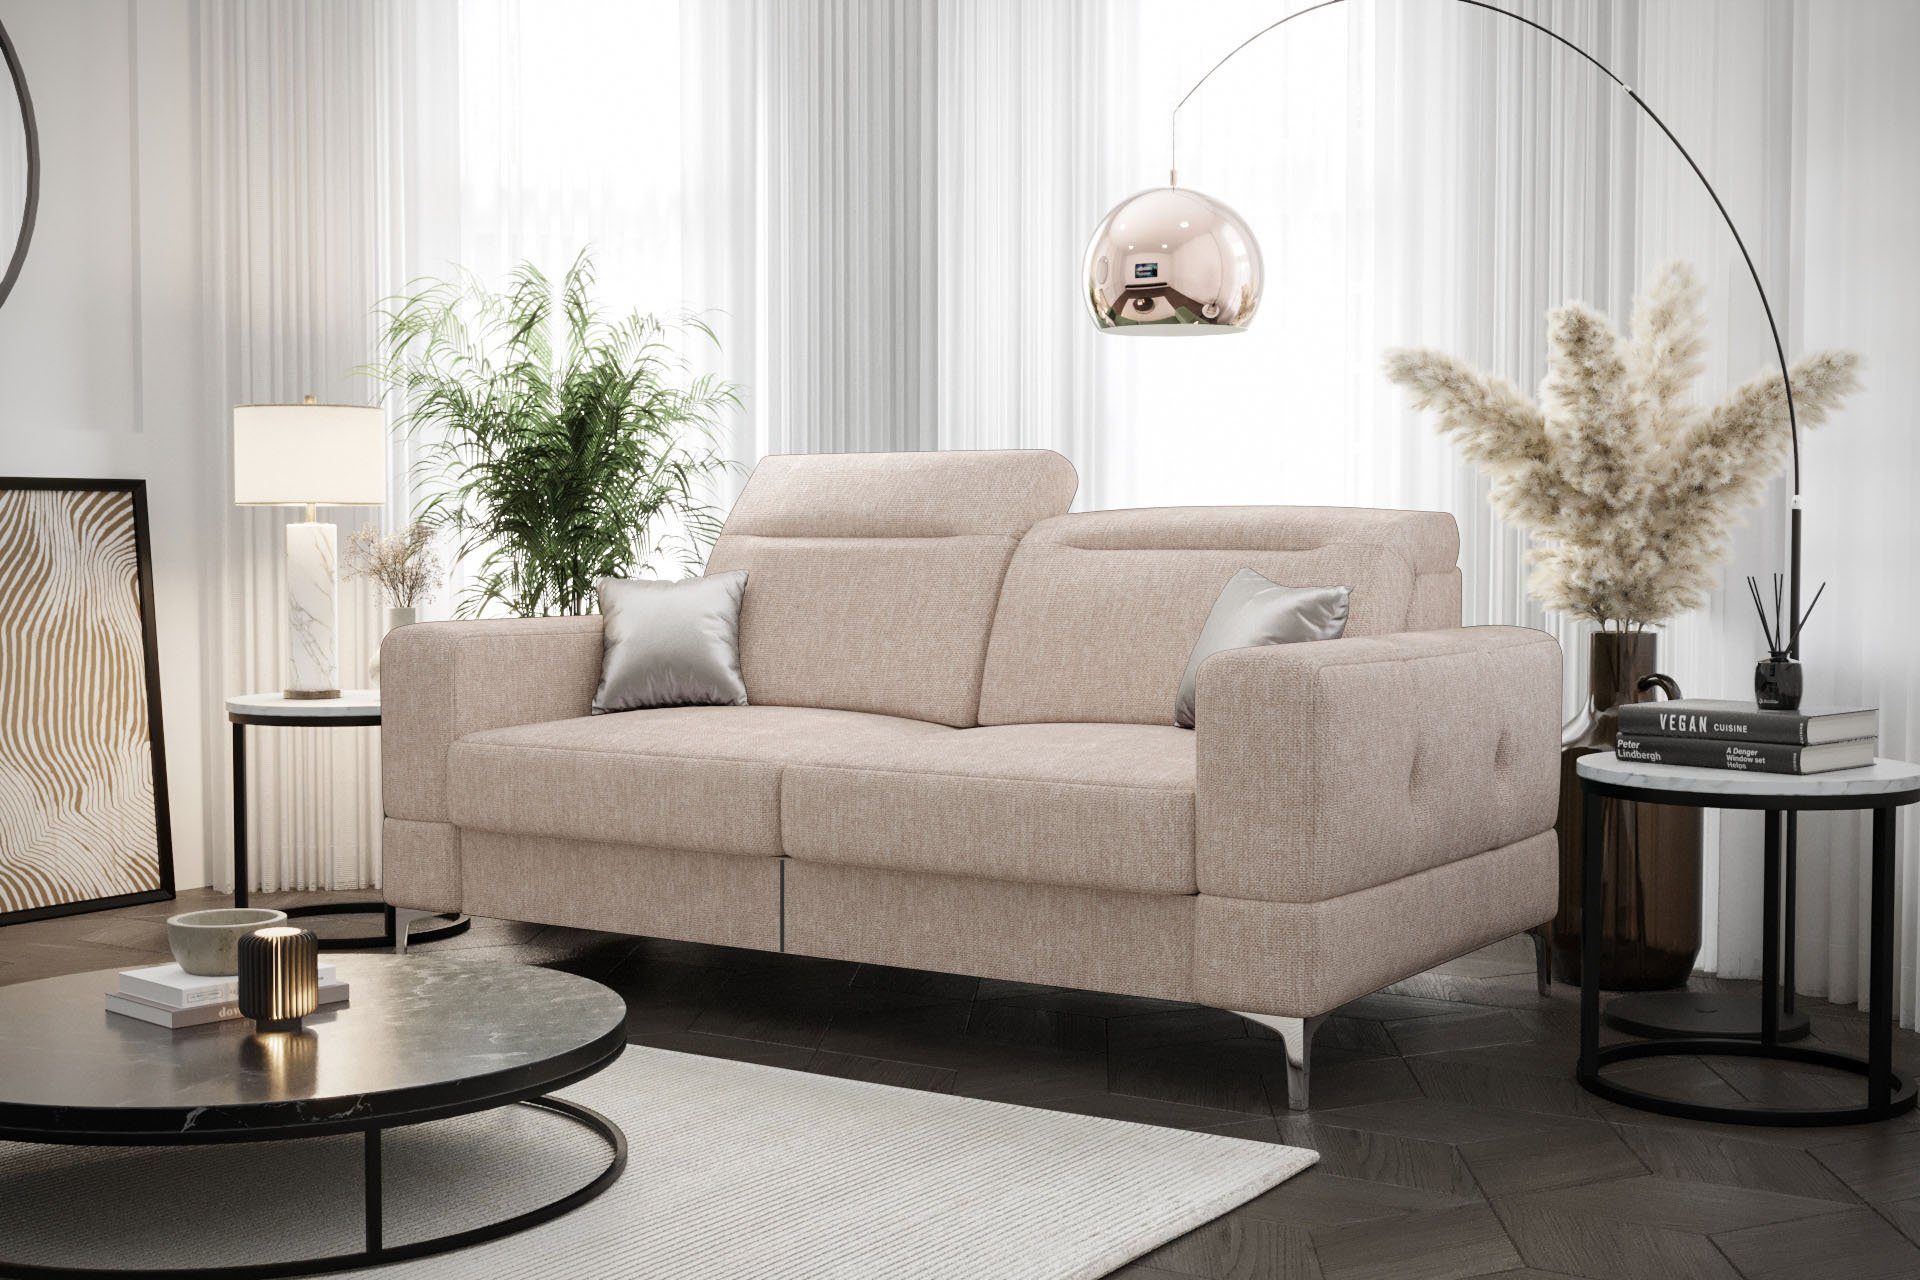 olivengrün Malibu Relax, Relaxfunktion, Veloursstoff Stoff-und elektrischer 2 für Möbel Dich Farbauswahl Modernes Sofa mit 11 Element Sofa mit